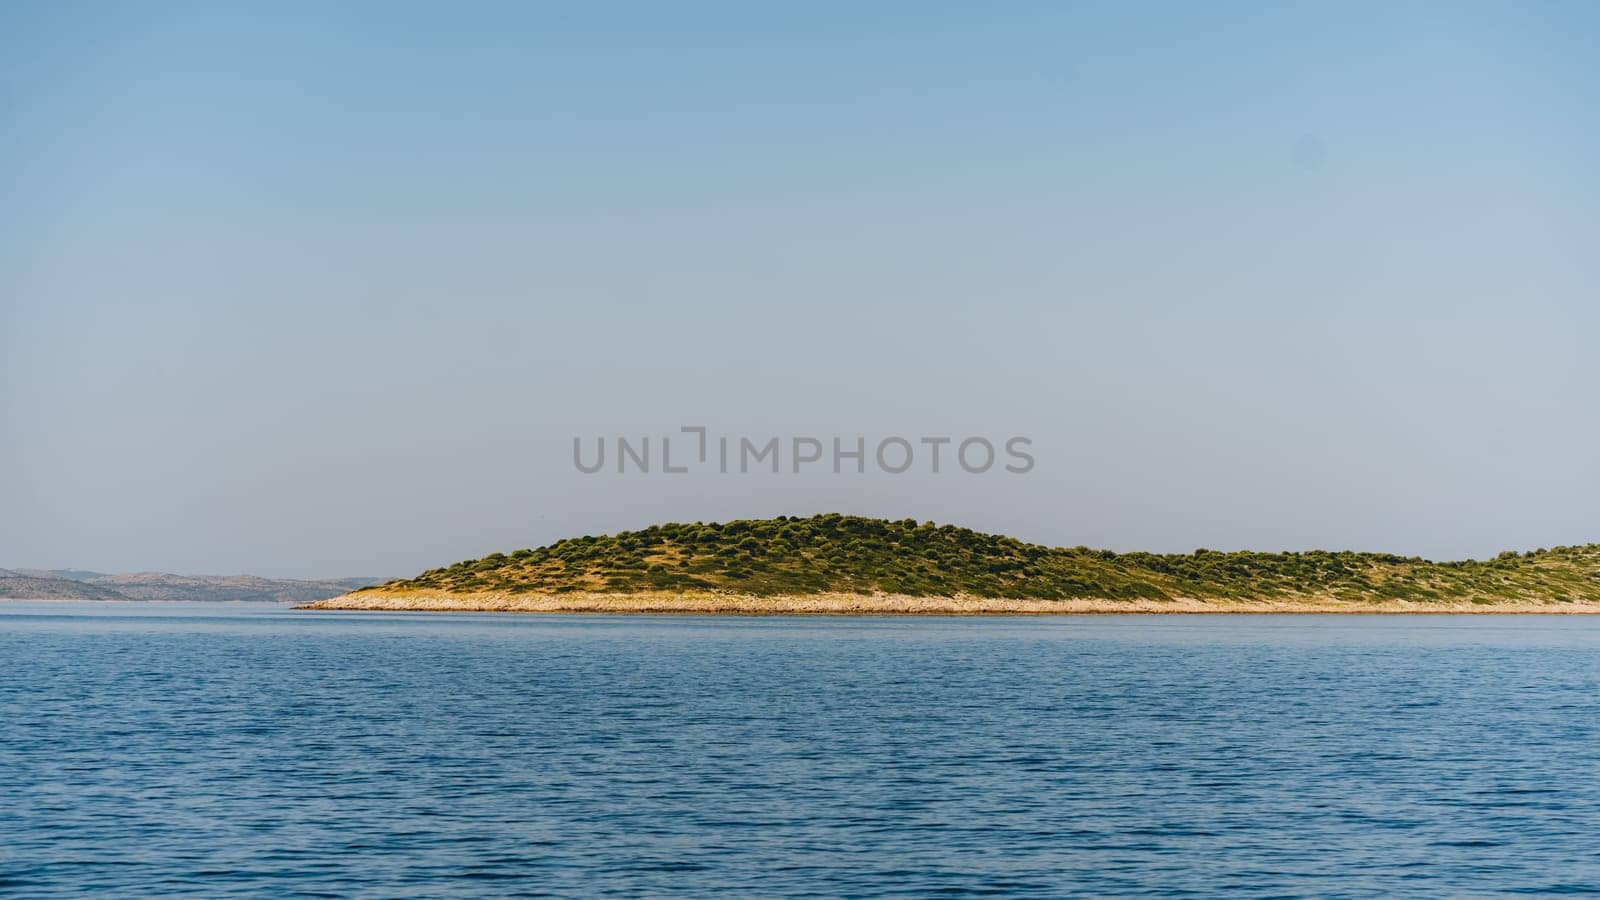 Narrow strip of shore, clear sky in Dugi Otok island, Croatia by Popov